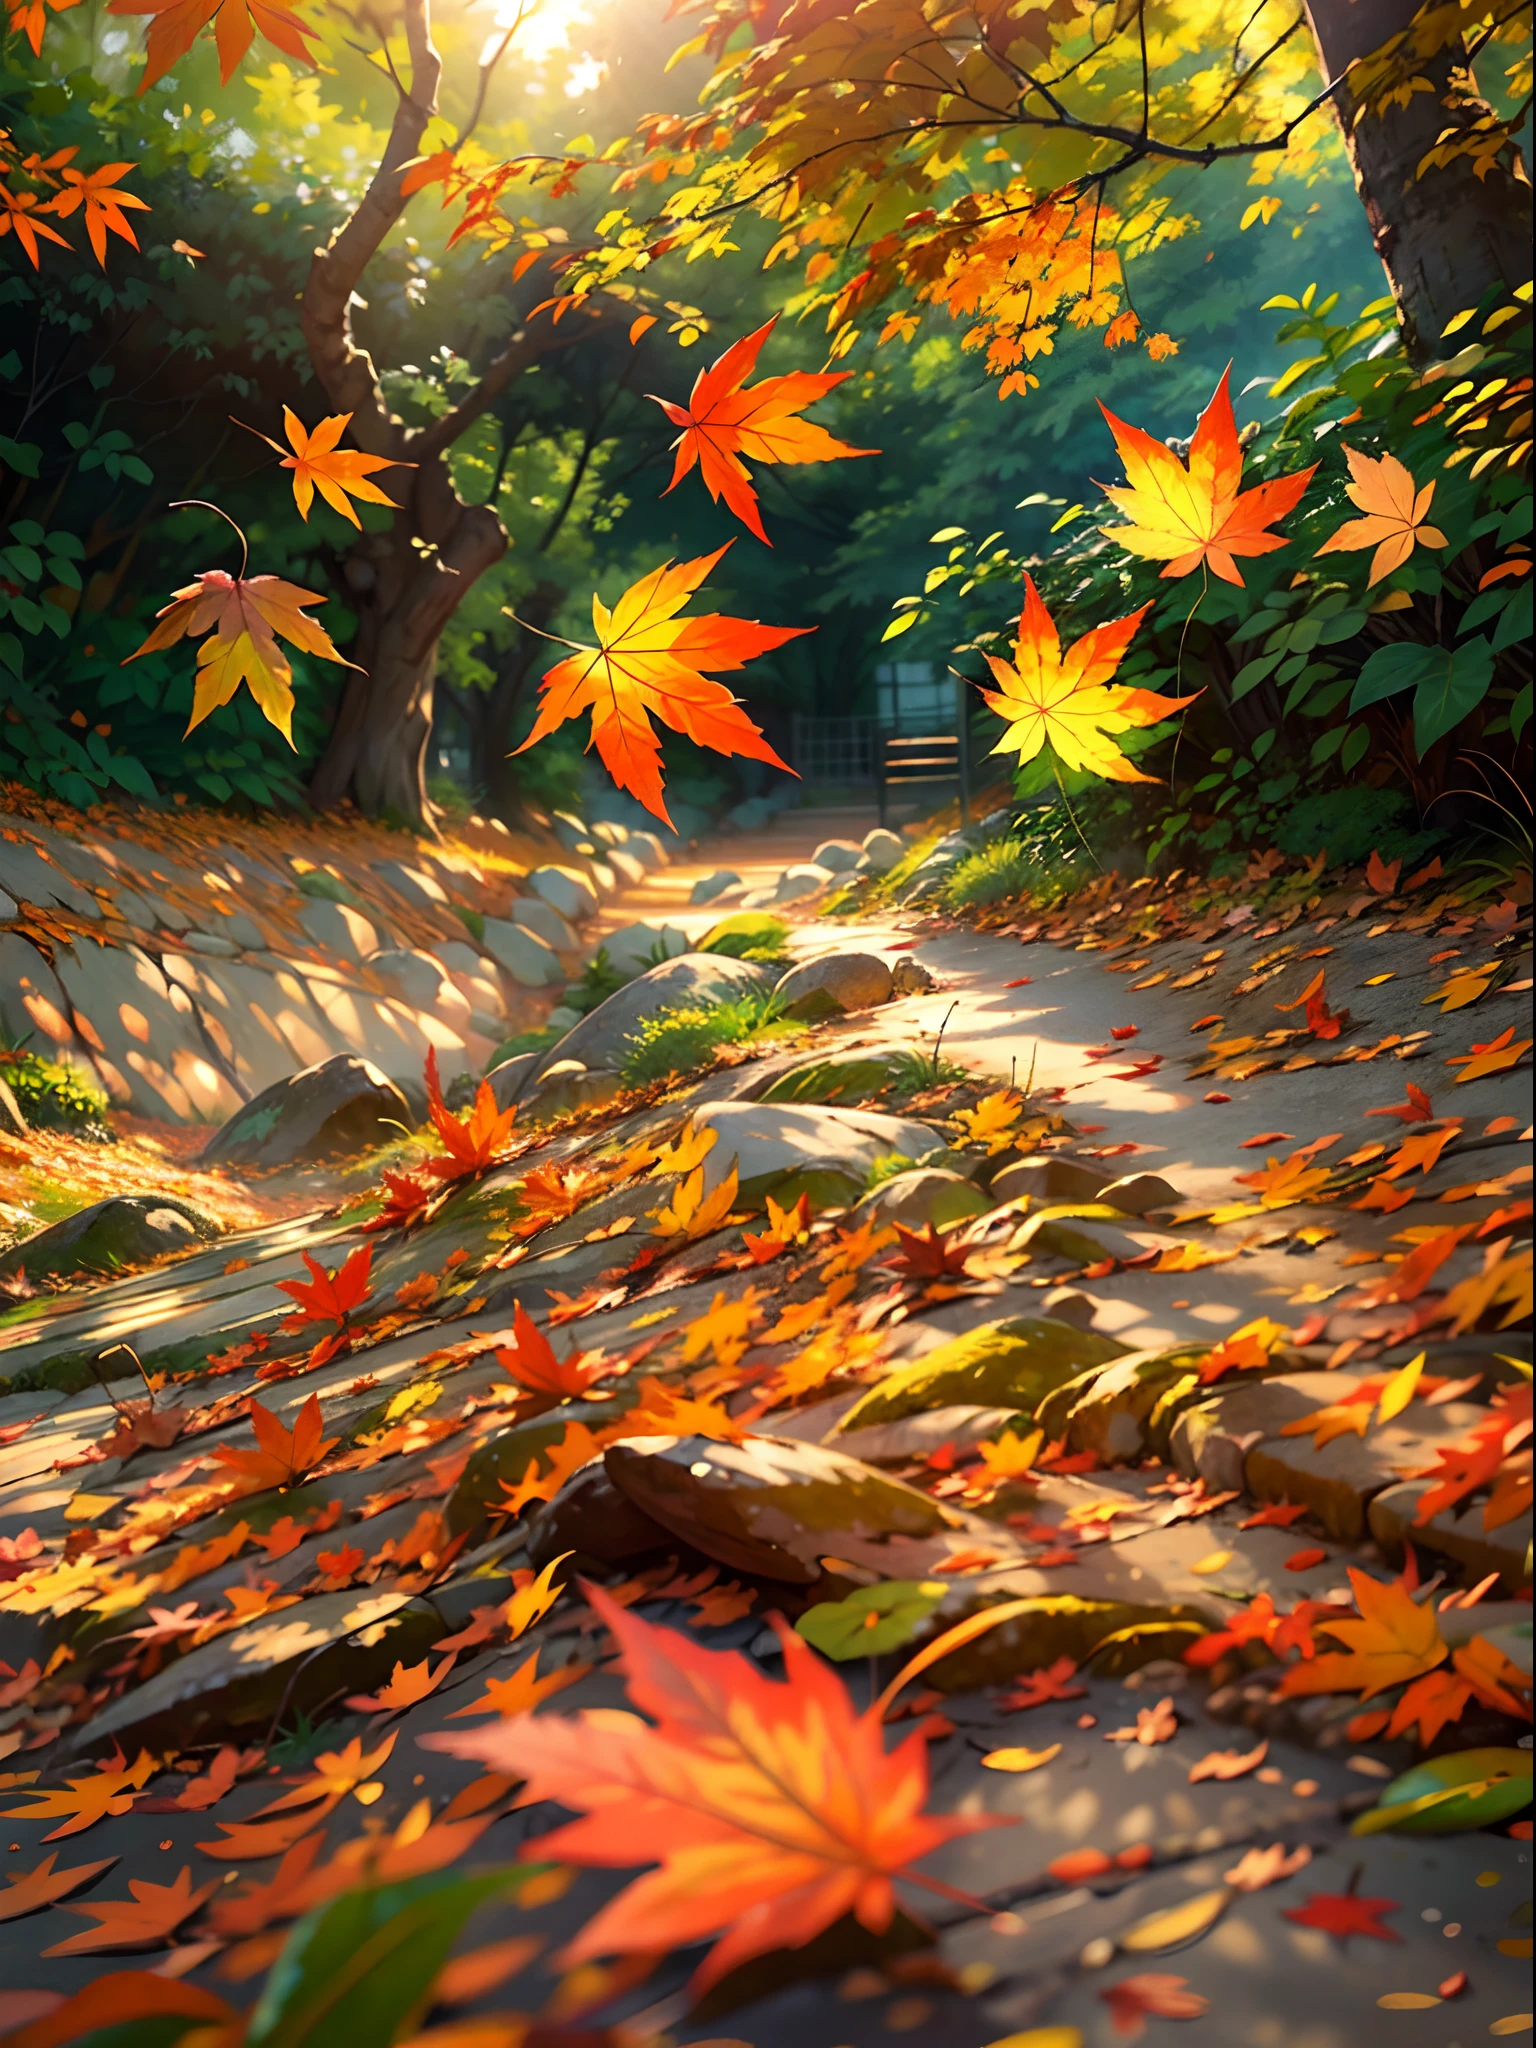 (最好的品質,超詳細,逼真的),鸟儿握住枫叶的图像, 柔和的阳光透过树林,落叶,寧靜的氣氛,自然美,鮮豔的色彩,微妙的阴影,叶子上有复杂的叶脉,秋天的空氣清新,微风轻拂,寧靜的花園環境,秋天的色調,树叶旋转的舞蹈,风穿过树枝低语,金色的阳光透过树叶的缝隙,平静安宁的心情,背景稍微模糊,叶子纹理精美,柔软的叶子,腳下的樹葉嘎吱作響,秋天的宁静,精心绘制的细节,发光的秋天风景,叶子处于不同颜色变化阶段,樹葉輕輕沙沙作響。